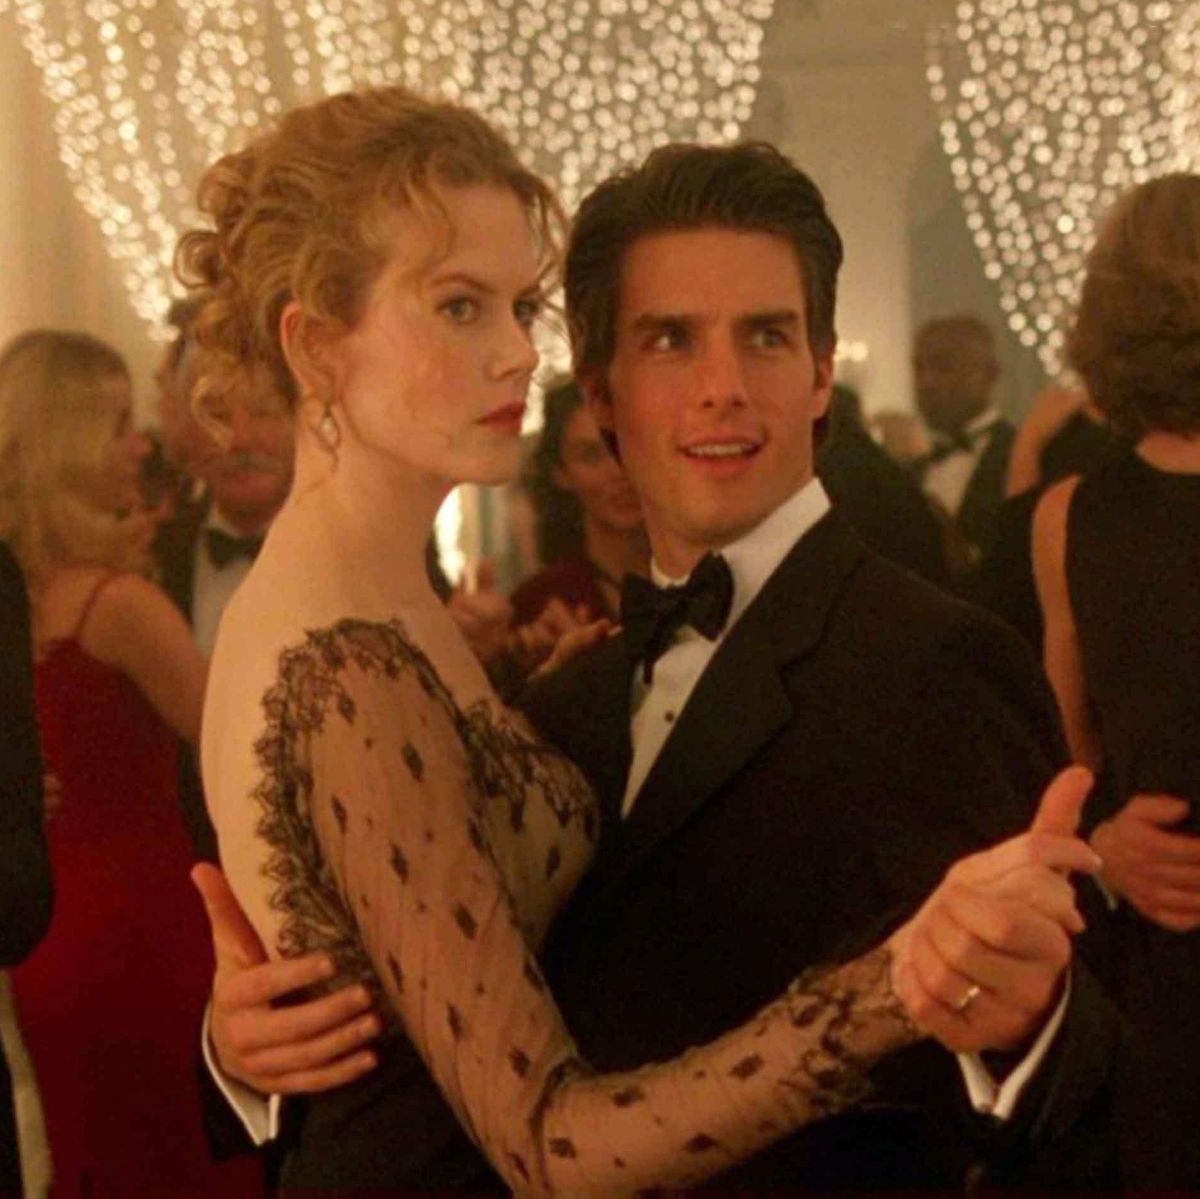 Με τον πρώην συζυγό της, Tom Cruise, στην ταινία που συμπρωταγωνιστούσαν, Μάτια Ερμητικά Κλειστά